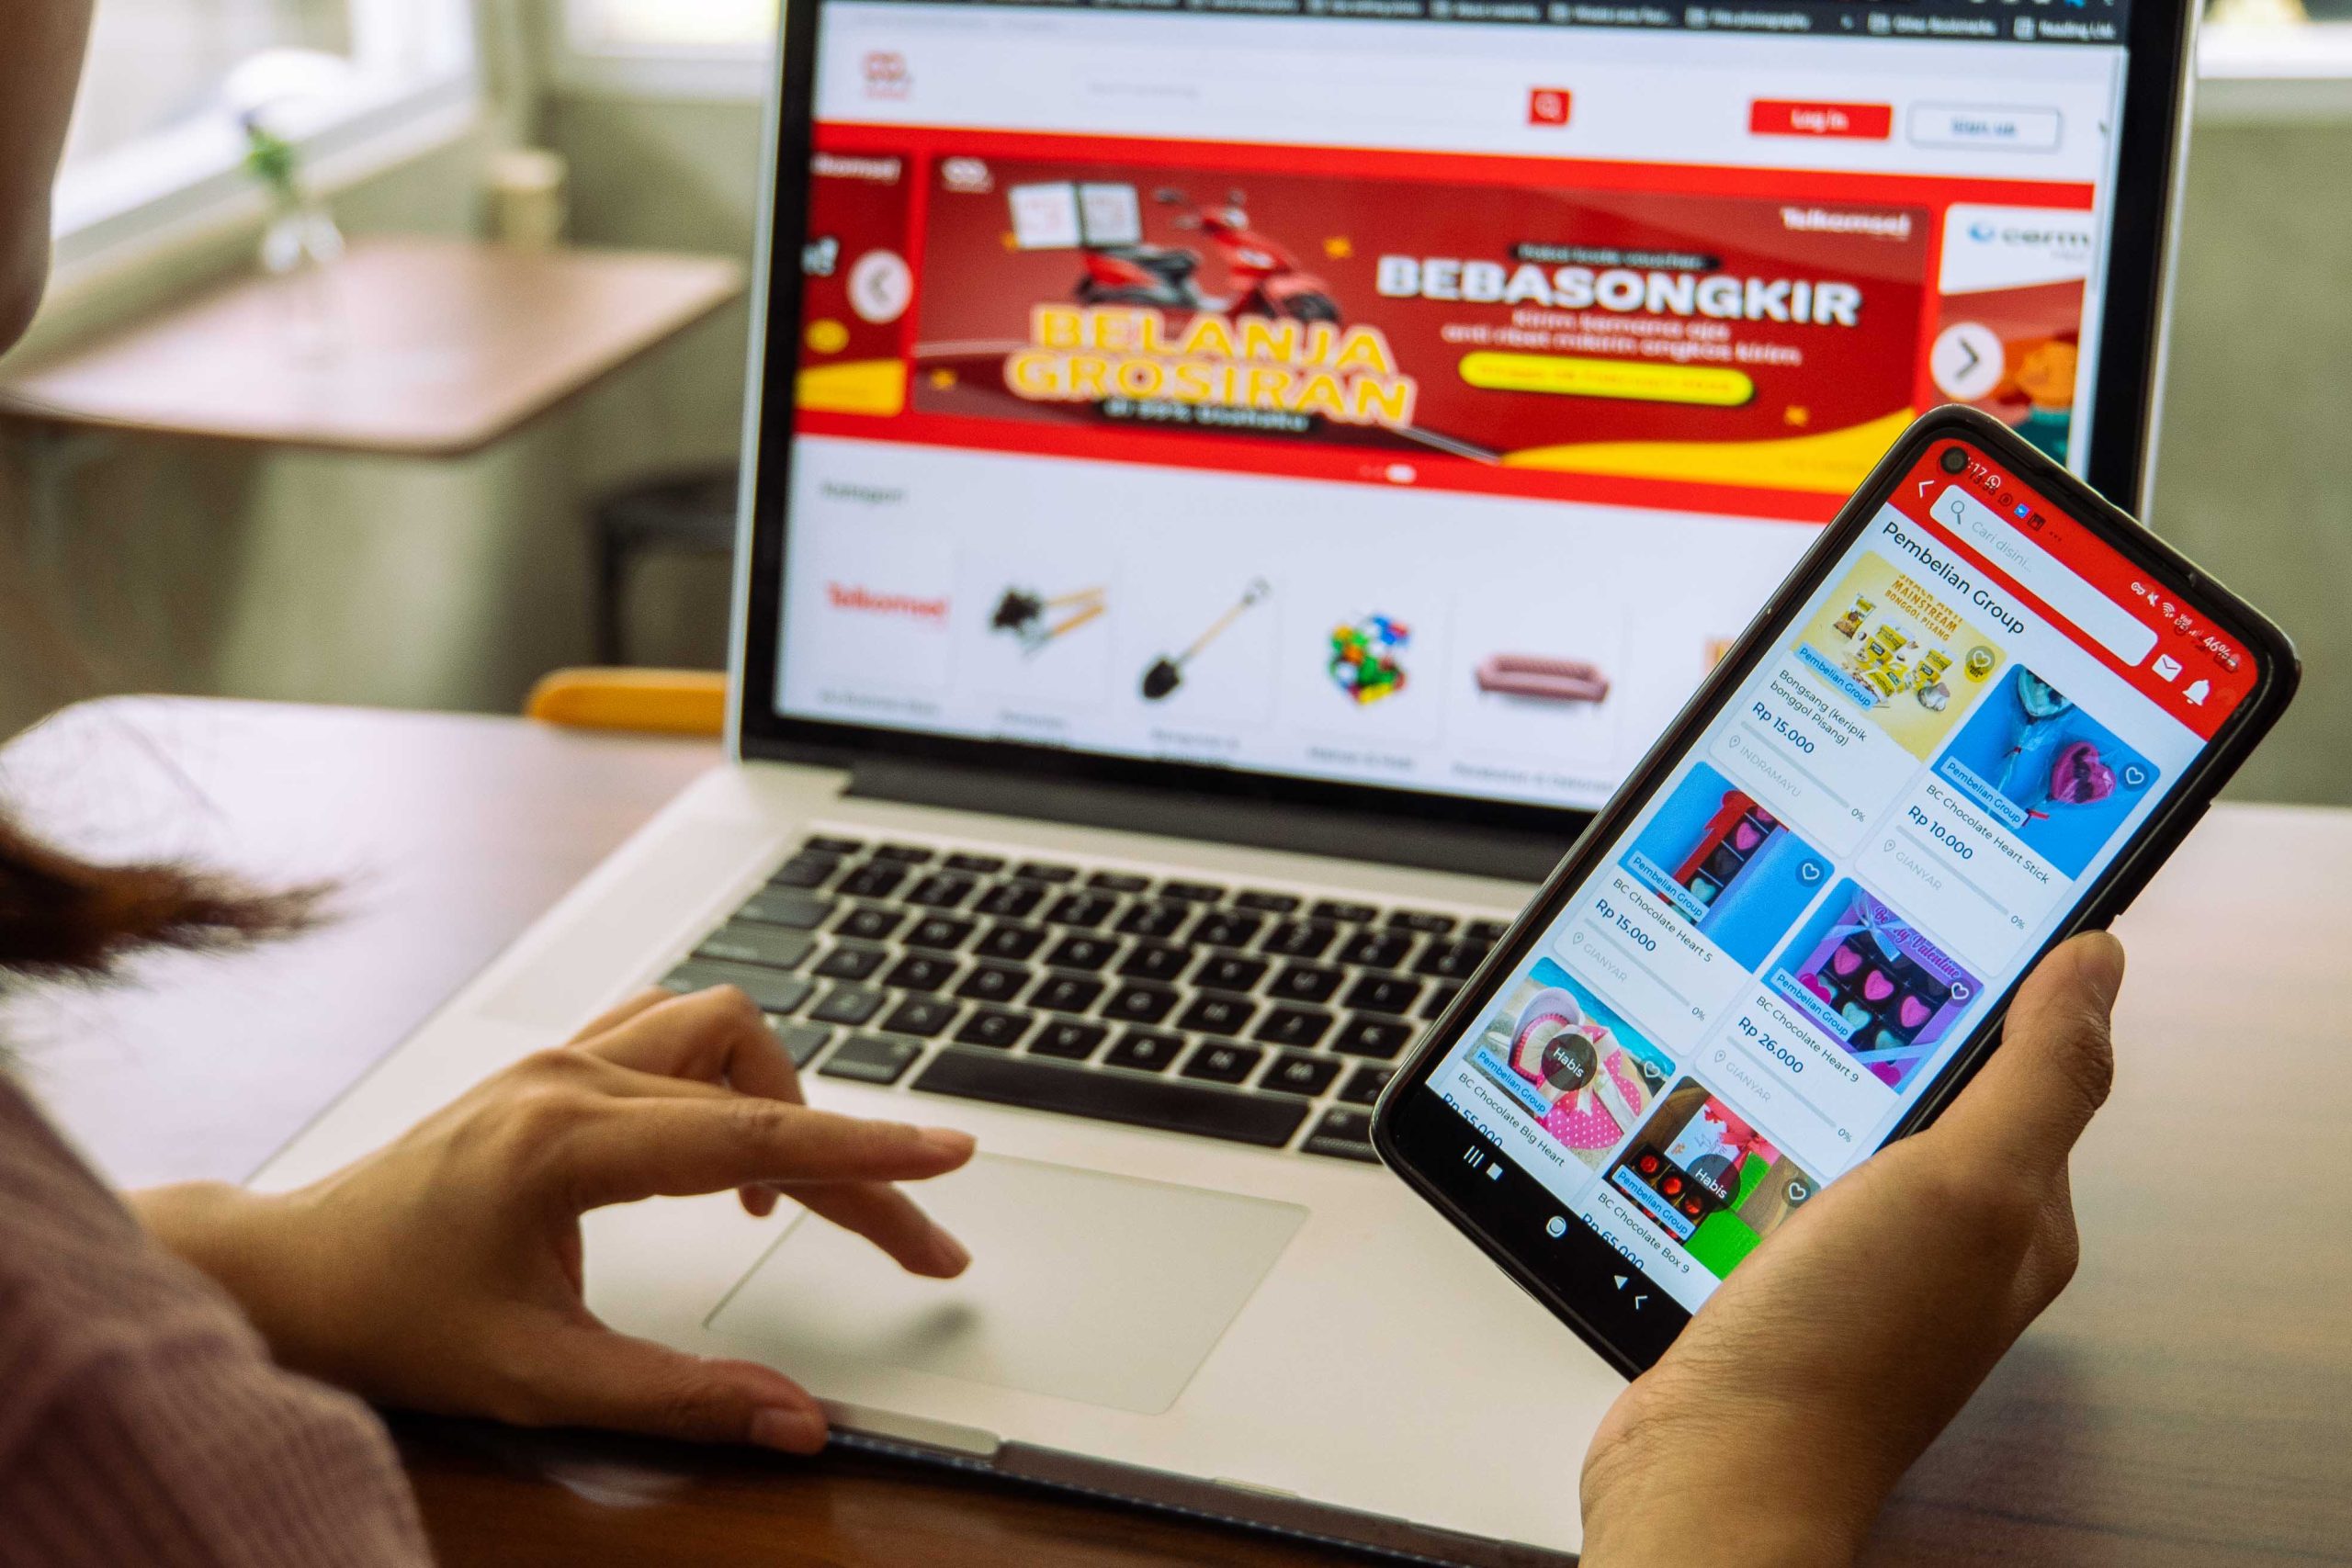 Telkomsel melakukan pembaruan dan pengembangan platform 99% Usahaku 2.0 dengan tambahan fitur ‘Pemasokku’ yang dapat menjadi solusi bagi pelaku bisnis untuk mendapatkan mitra supplier atau grosir terpercaya di berbagai wilayah Indonesia. Informasi lengkap